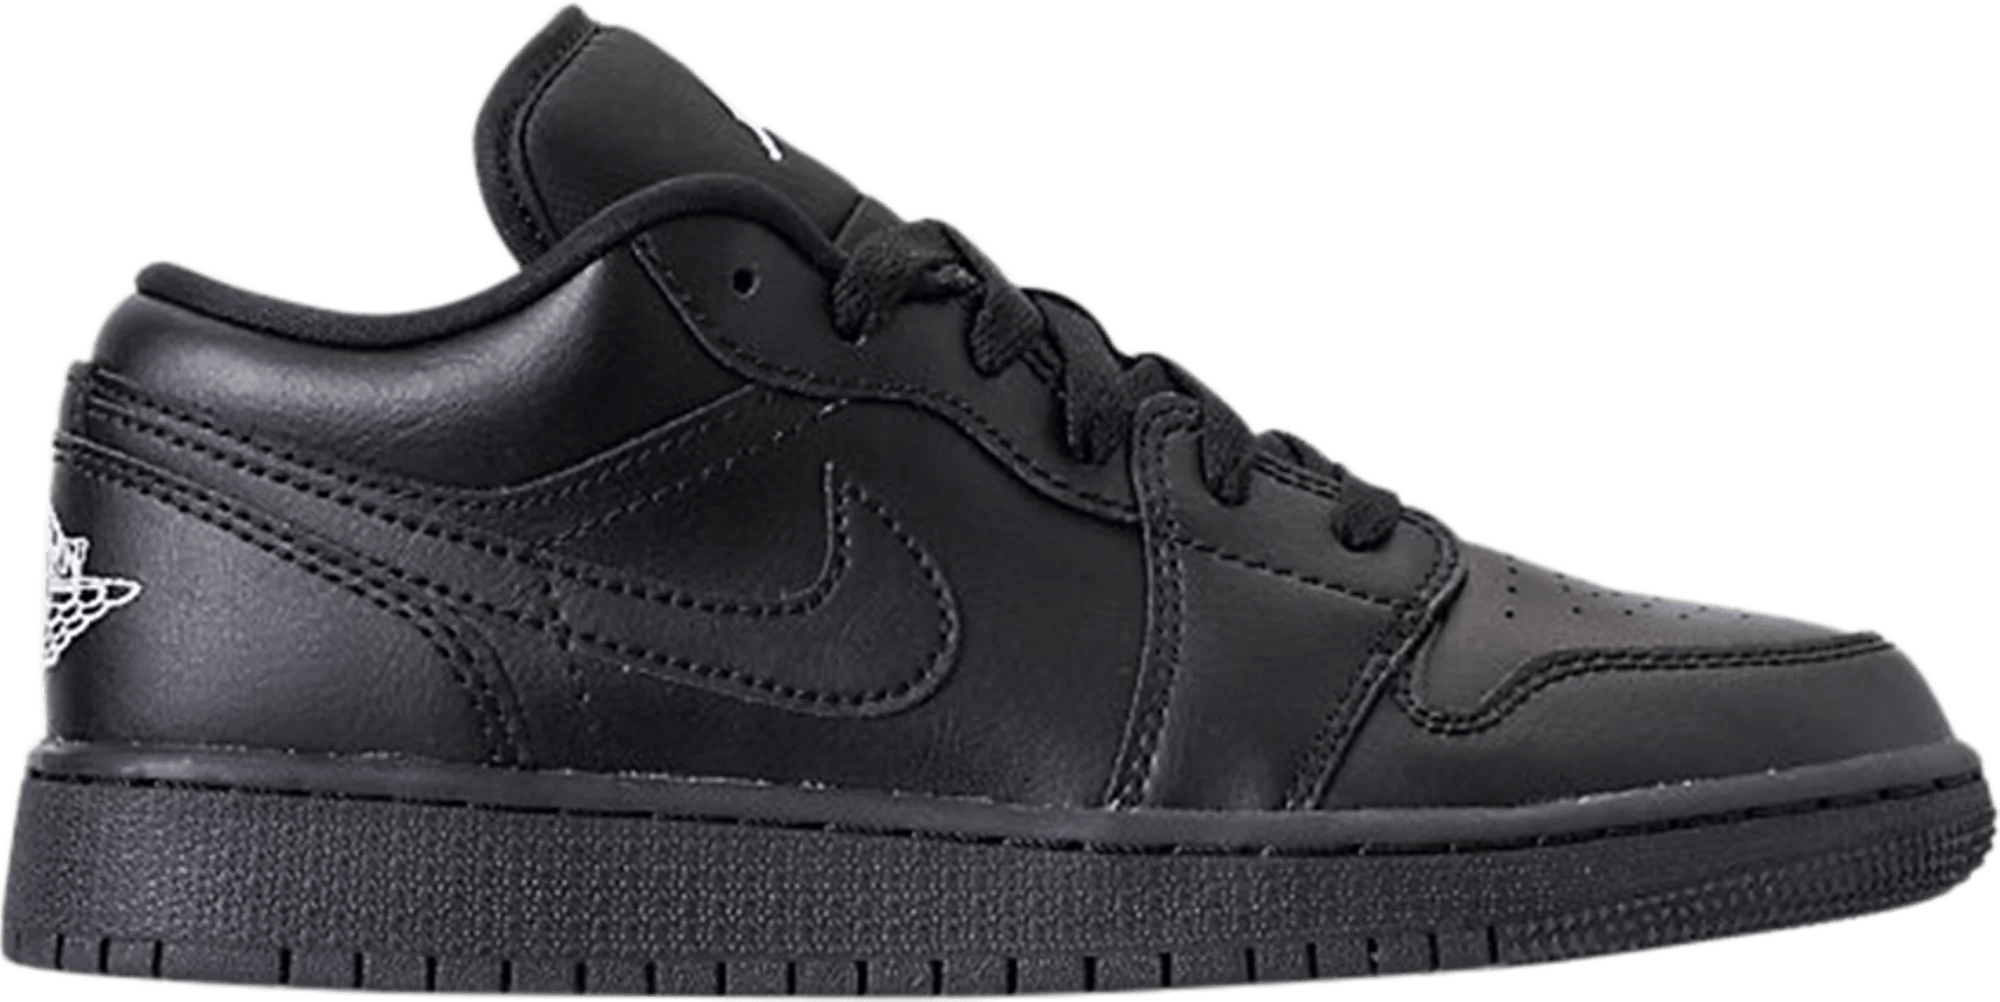 sneakers Nike Air Jordan 1 Low Black 2019 (GS) Women's